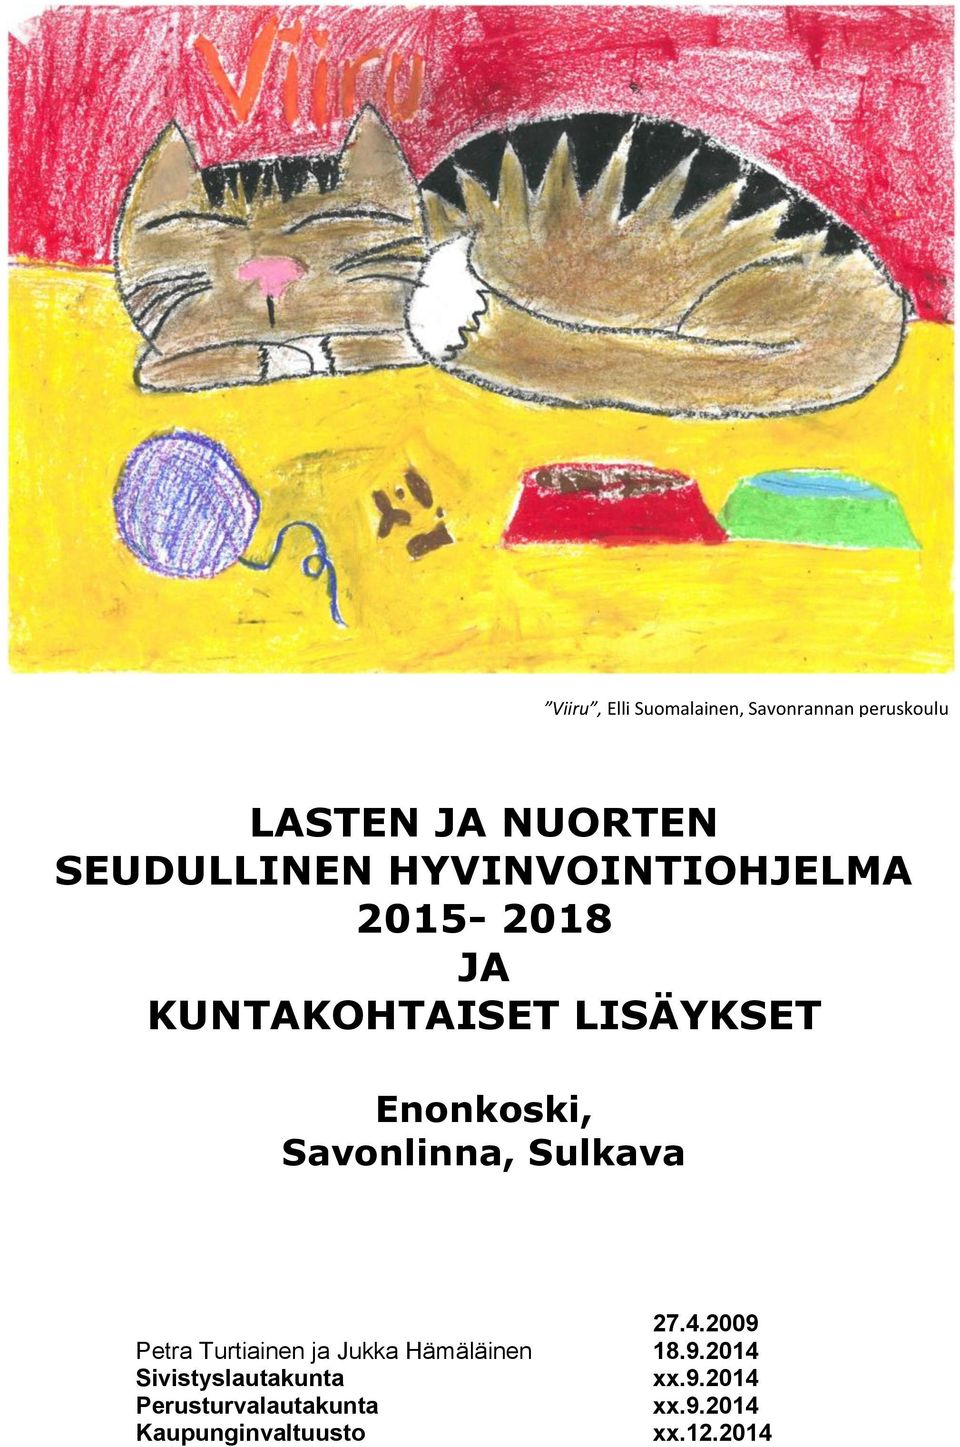 Savonlinna, Sulkava 27.4.2009 Petra Turtiainen ja Jukka Hämäläinen 18.9.2014 Sivistyslautakunta xx.